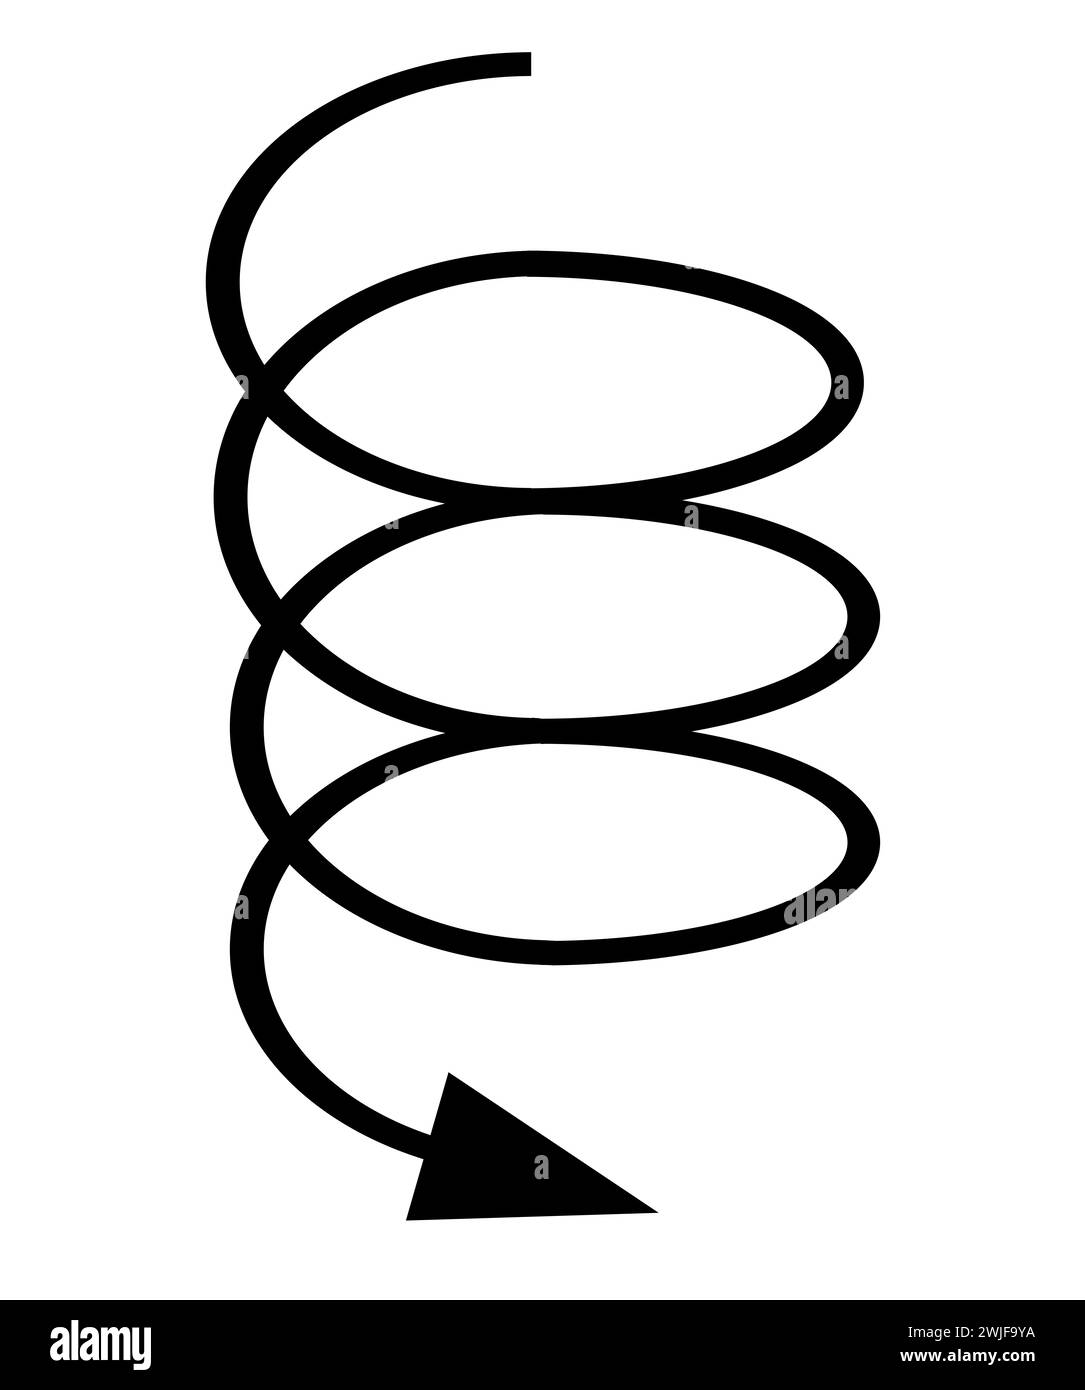 Una freccia nera che si sposta verso il basso e fuori controllo isolata su uno sfondo bianco Foto Stock